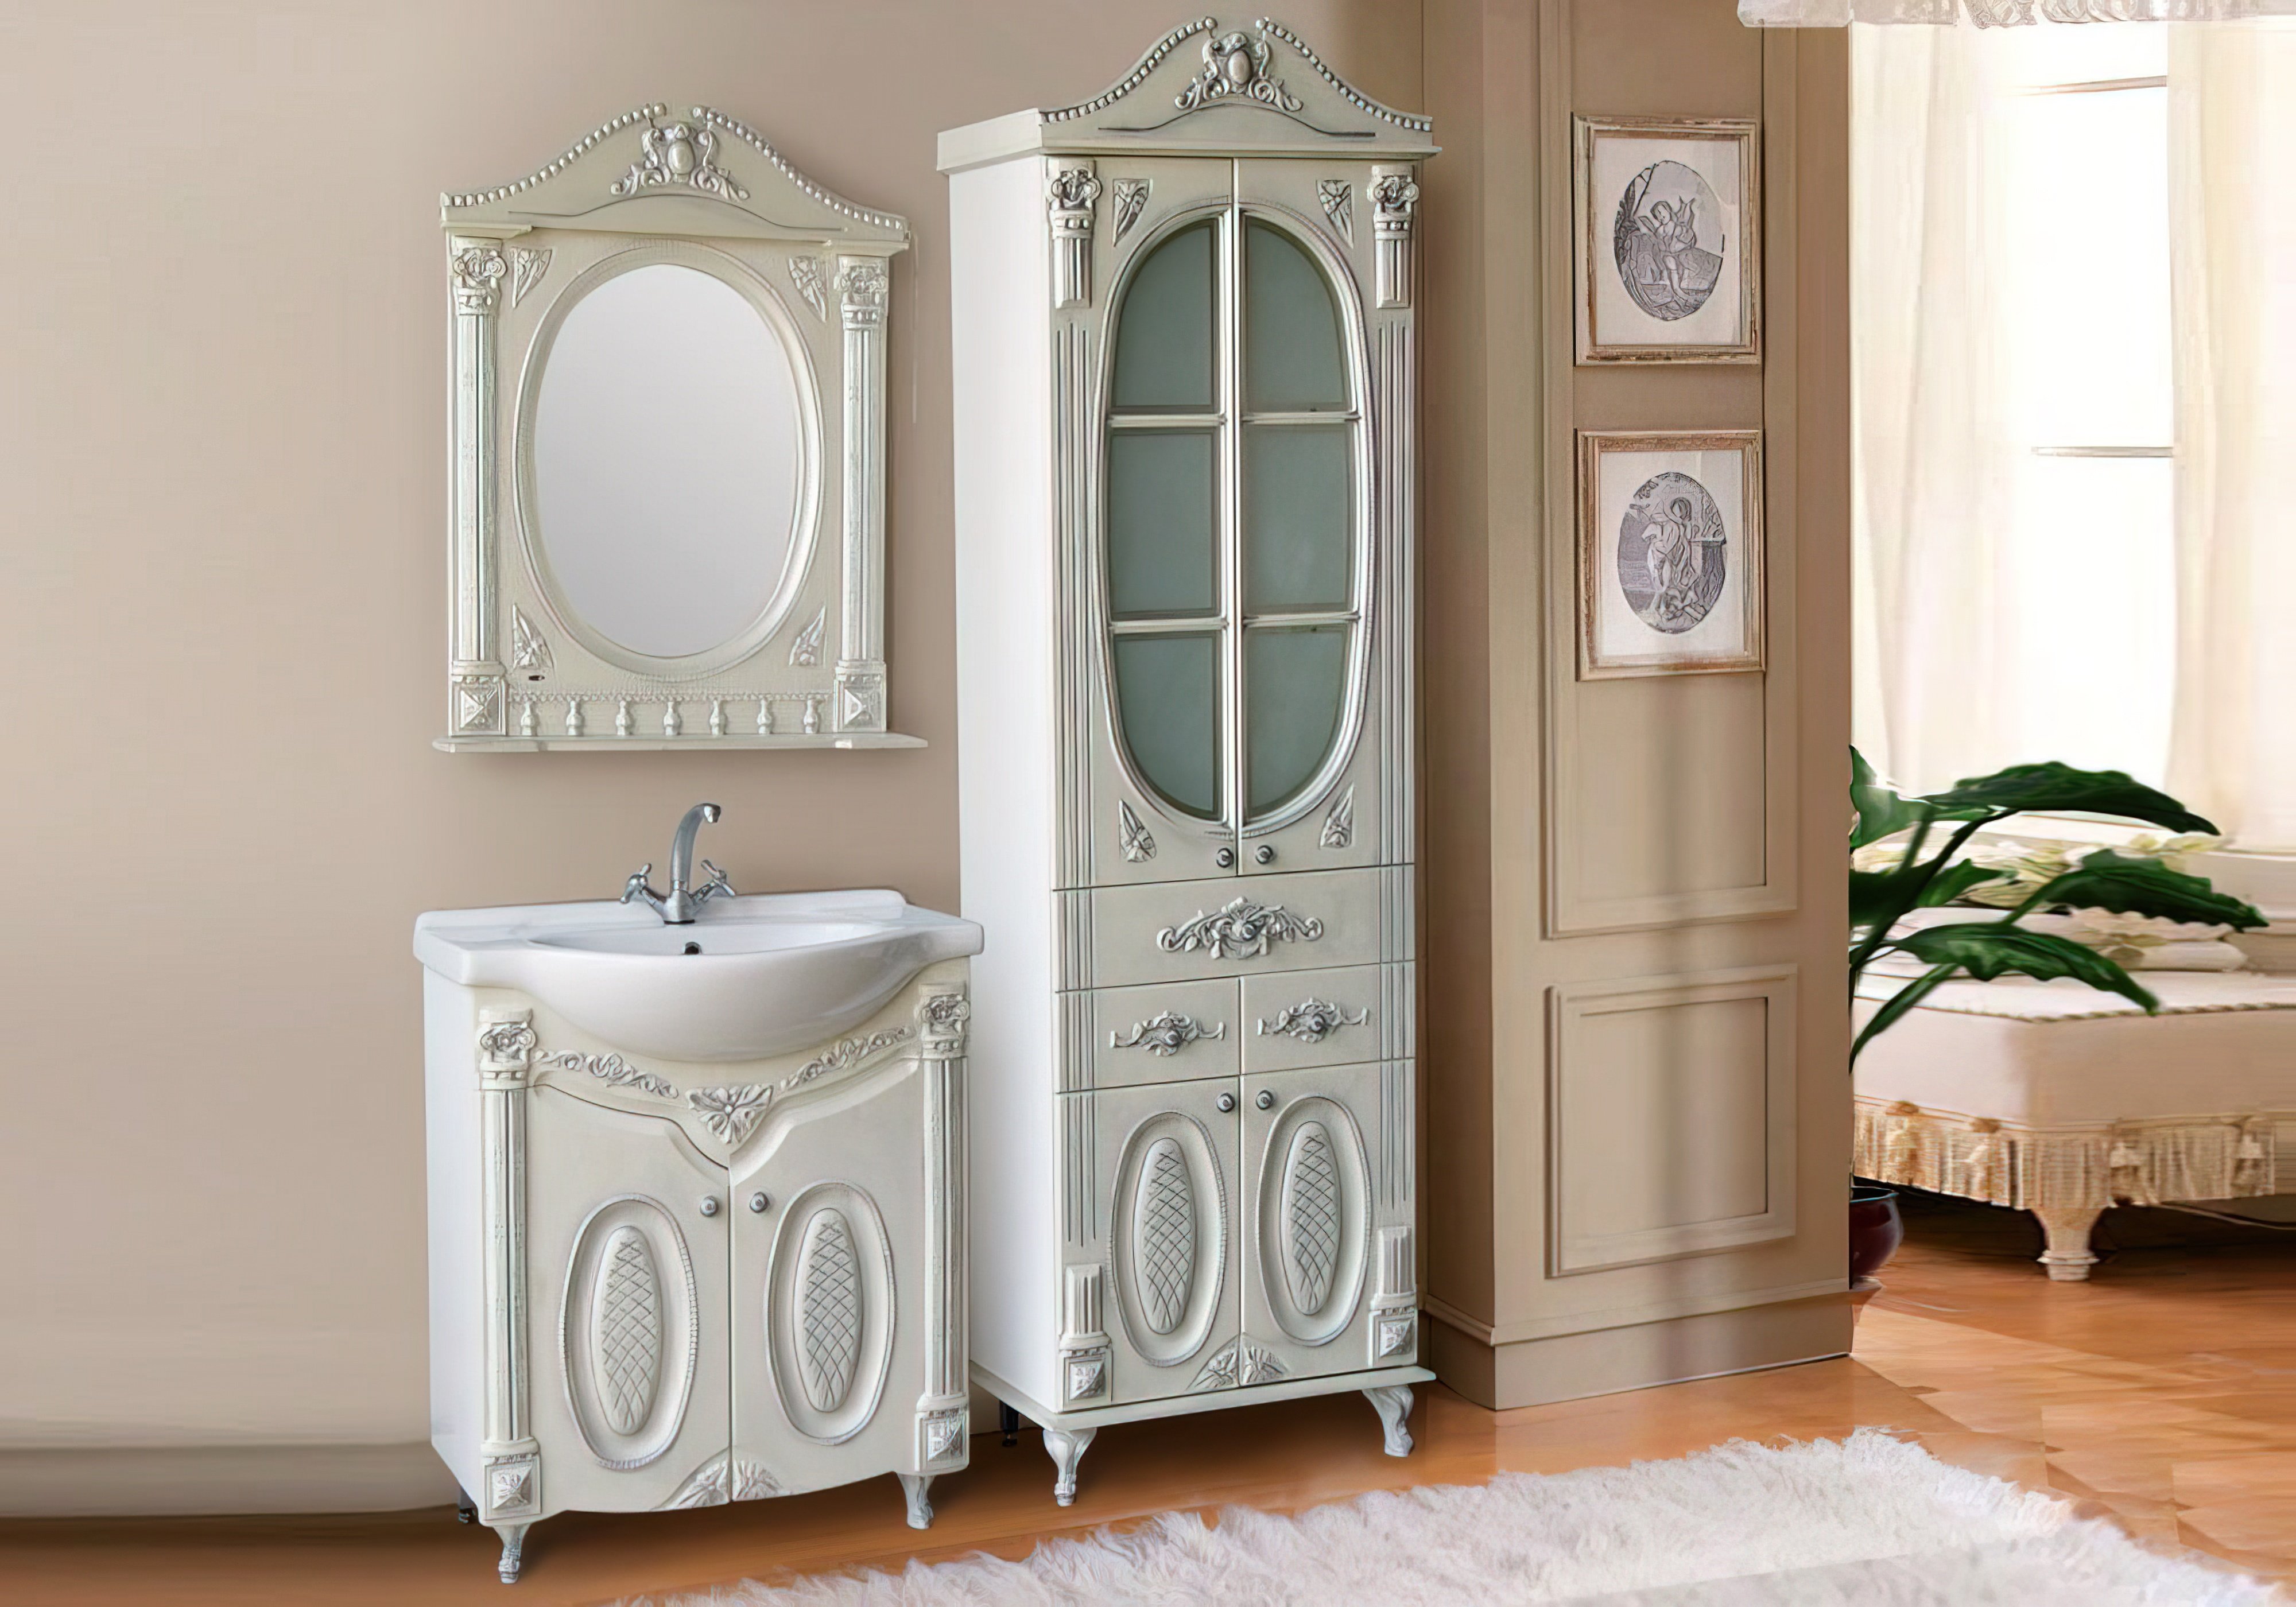  Купить Мебель для ванной комнаты Комплект мебели для ванной "Наполеон" Ольвия